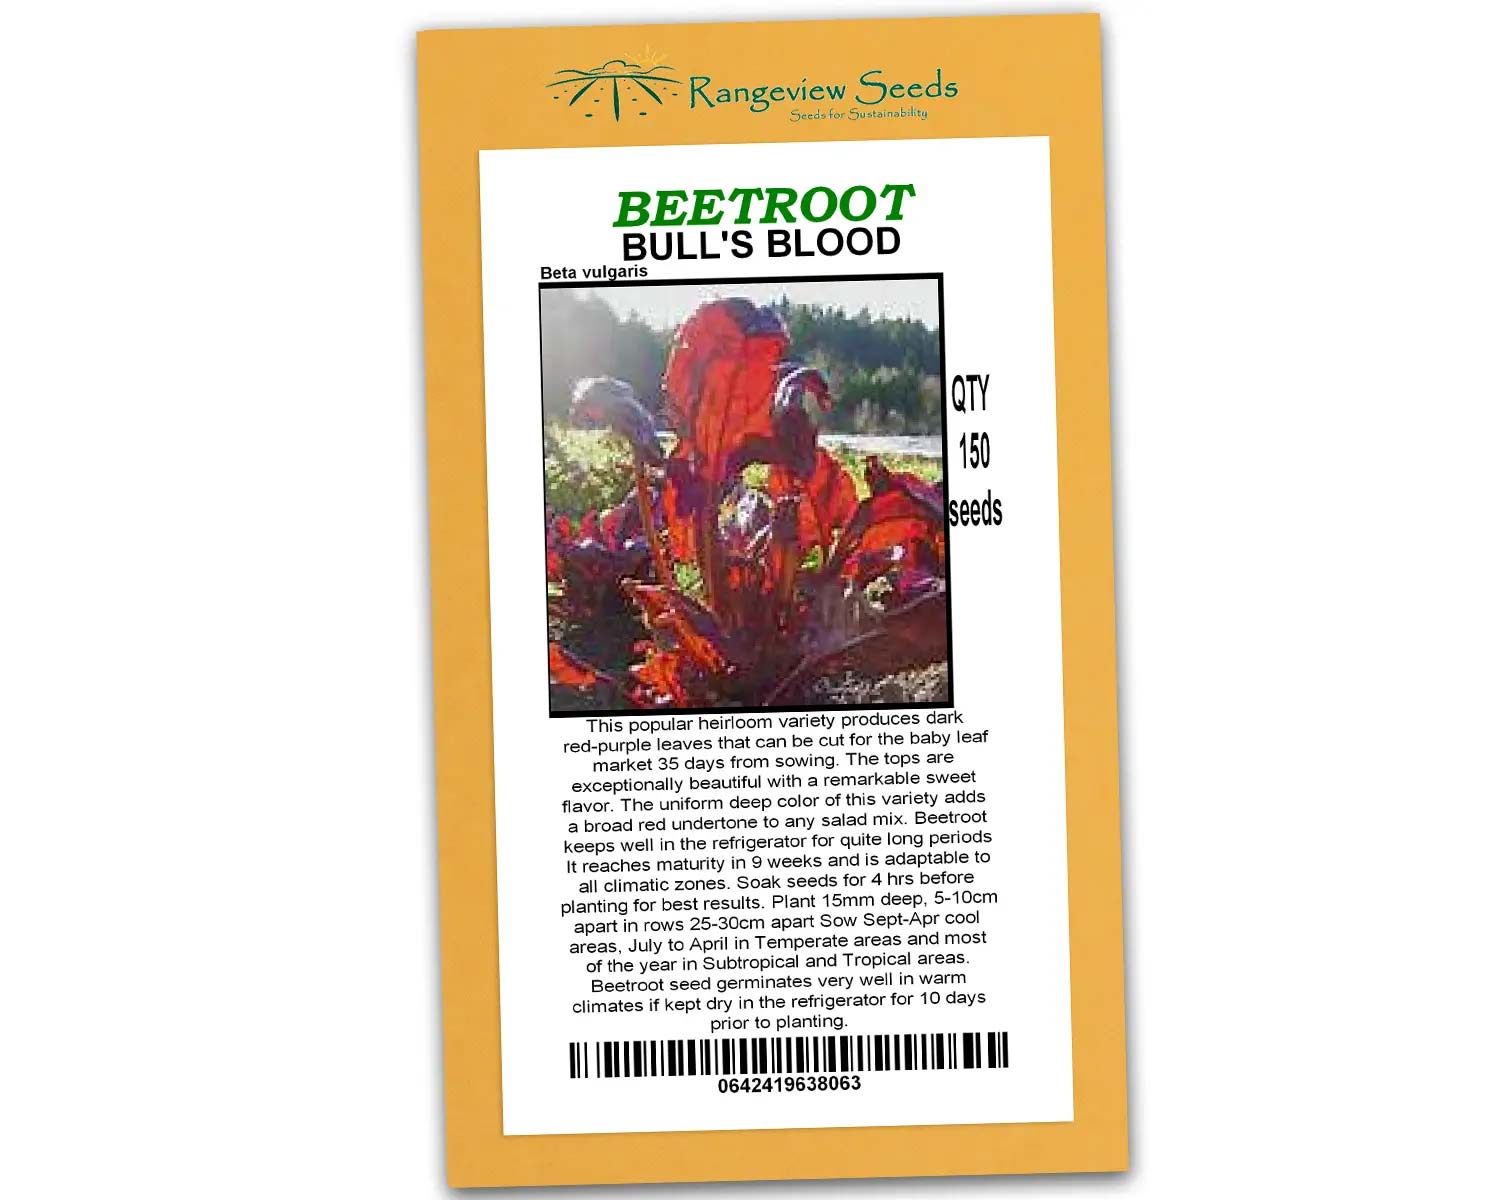 Beetroot Bulls Blood - Rangeview Seeds